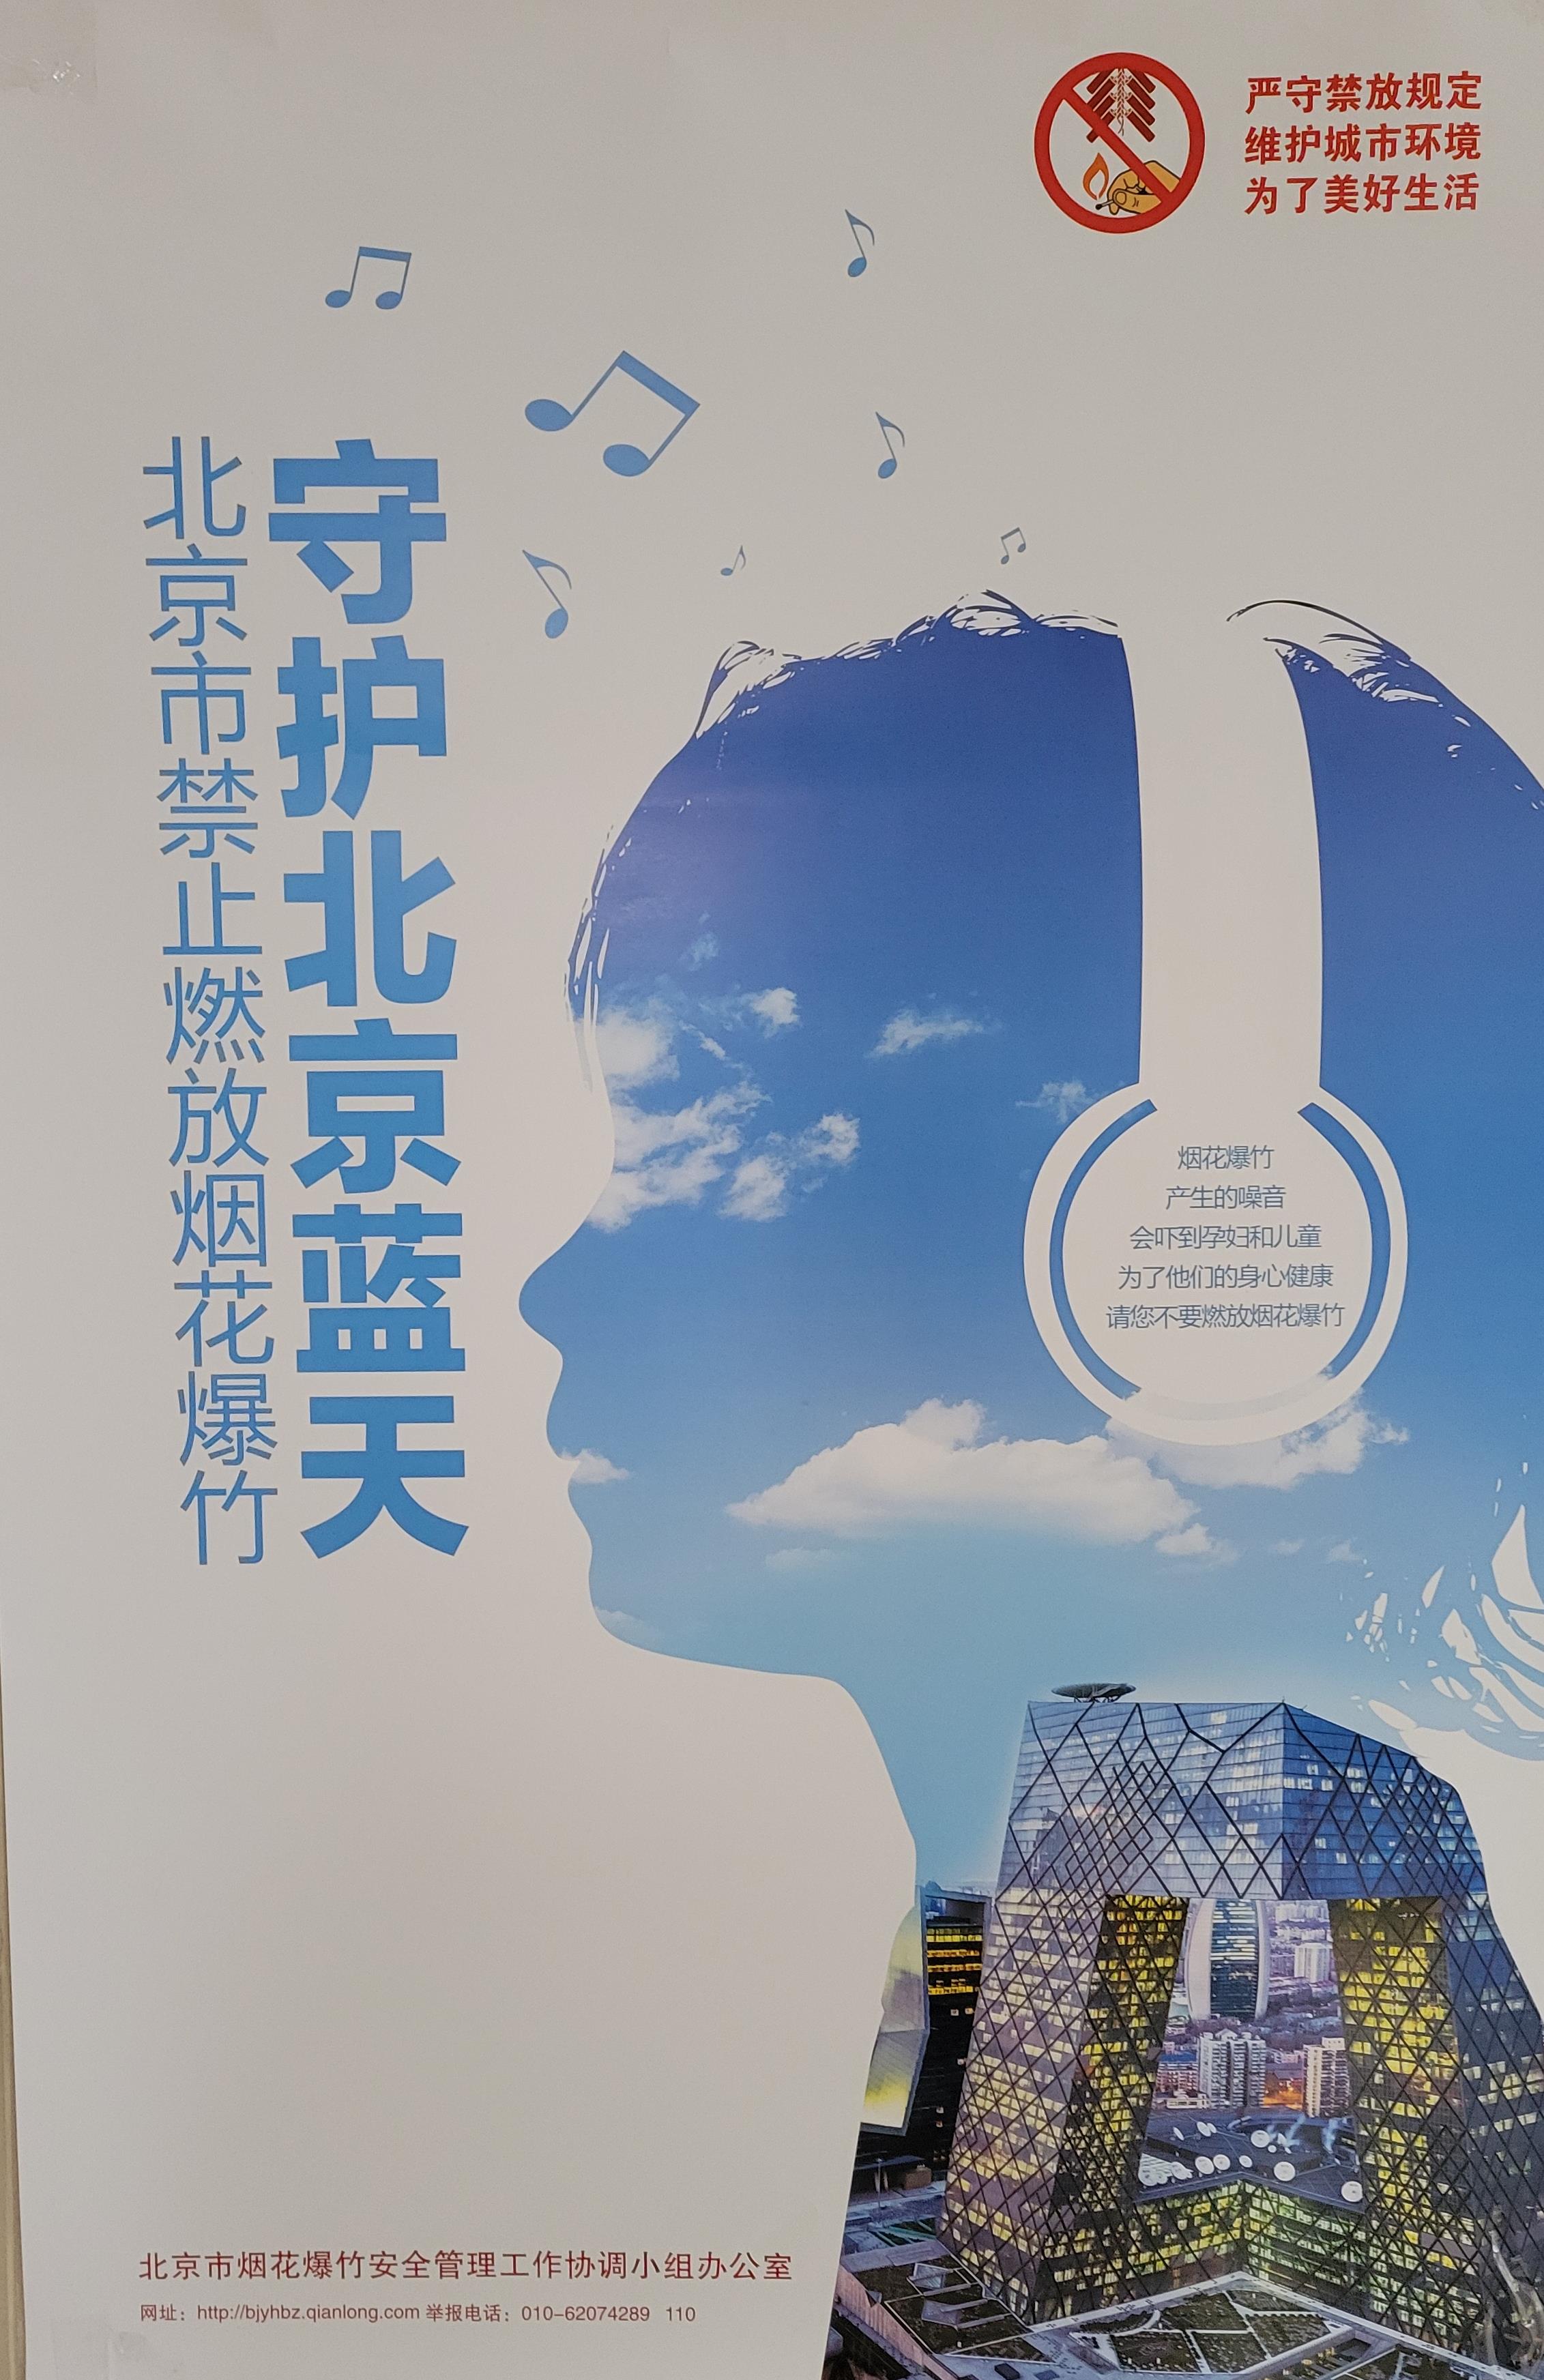 베이징의 푸른 하늘을 지키기 위해 폭죽도 금지하는 내용을 담은 포스터